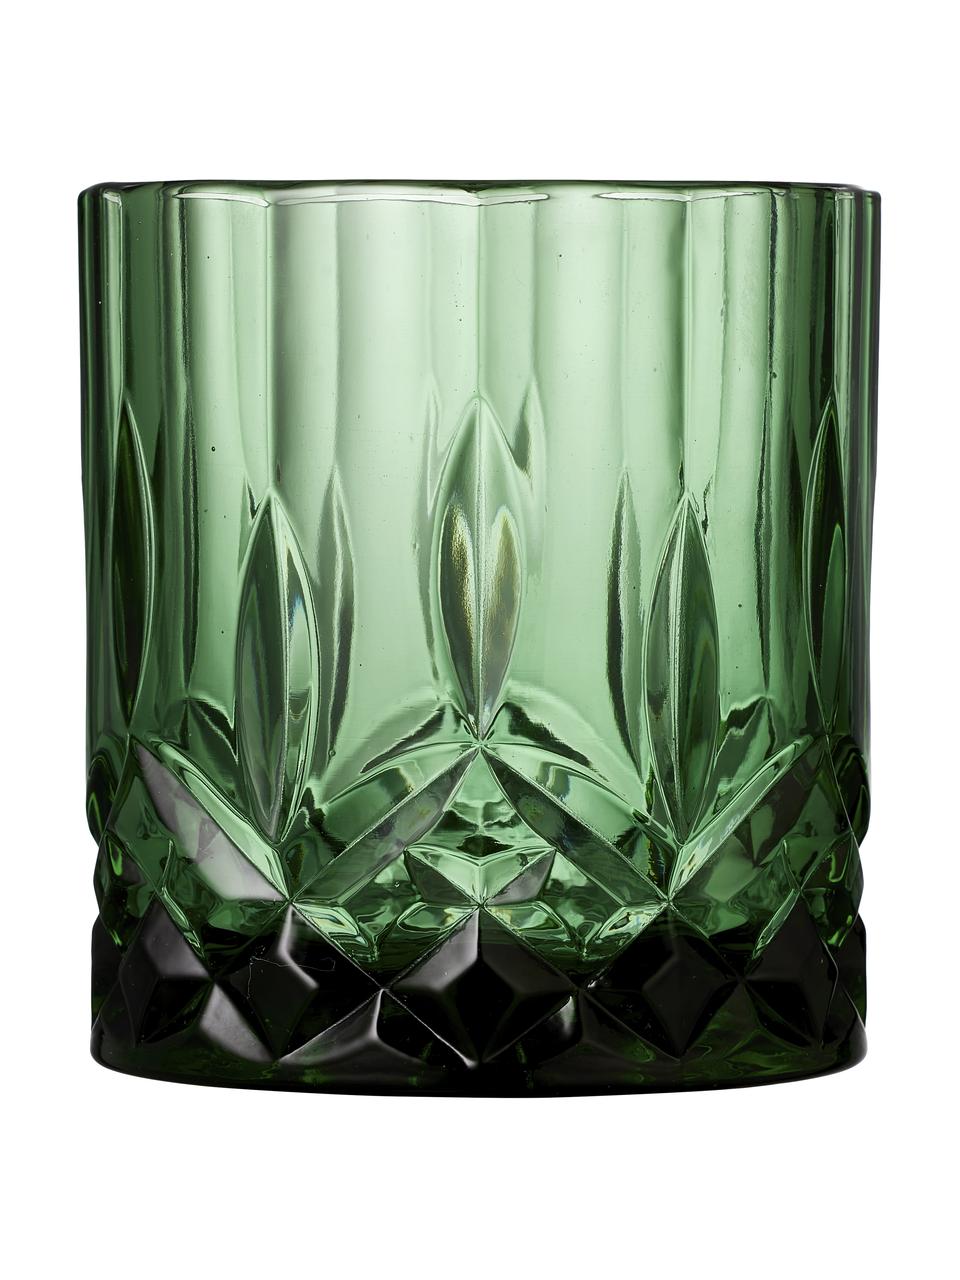 Whiskygläser Sorrento, 4er-Set, Glas, Bunt, Ø 8 x H 10 cm, 350 ml